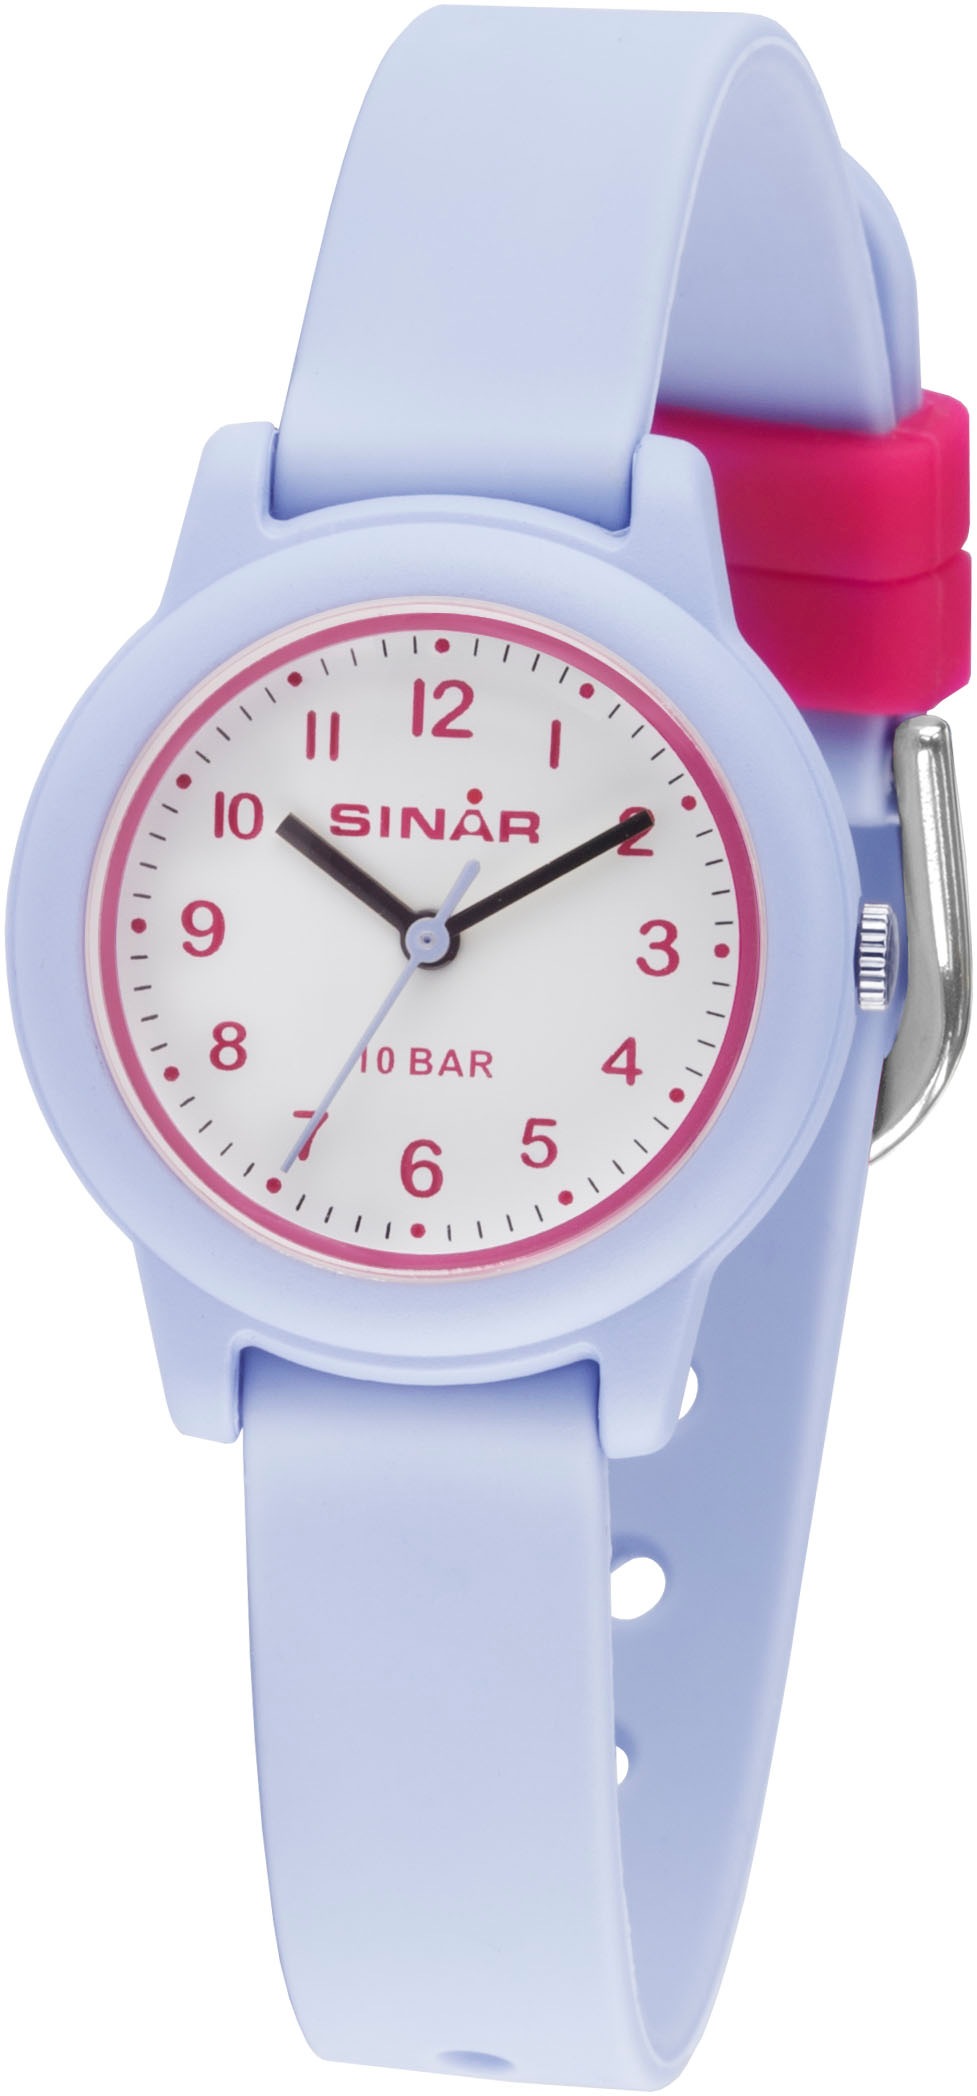 SINAR Quarzuhr, Armbanduhr, Kinderuhr, Mädchenuhr, ideal auch als Geschenk